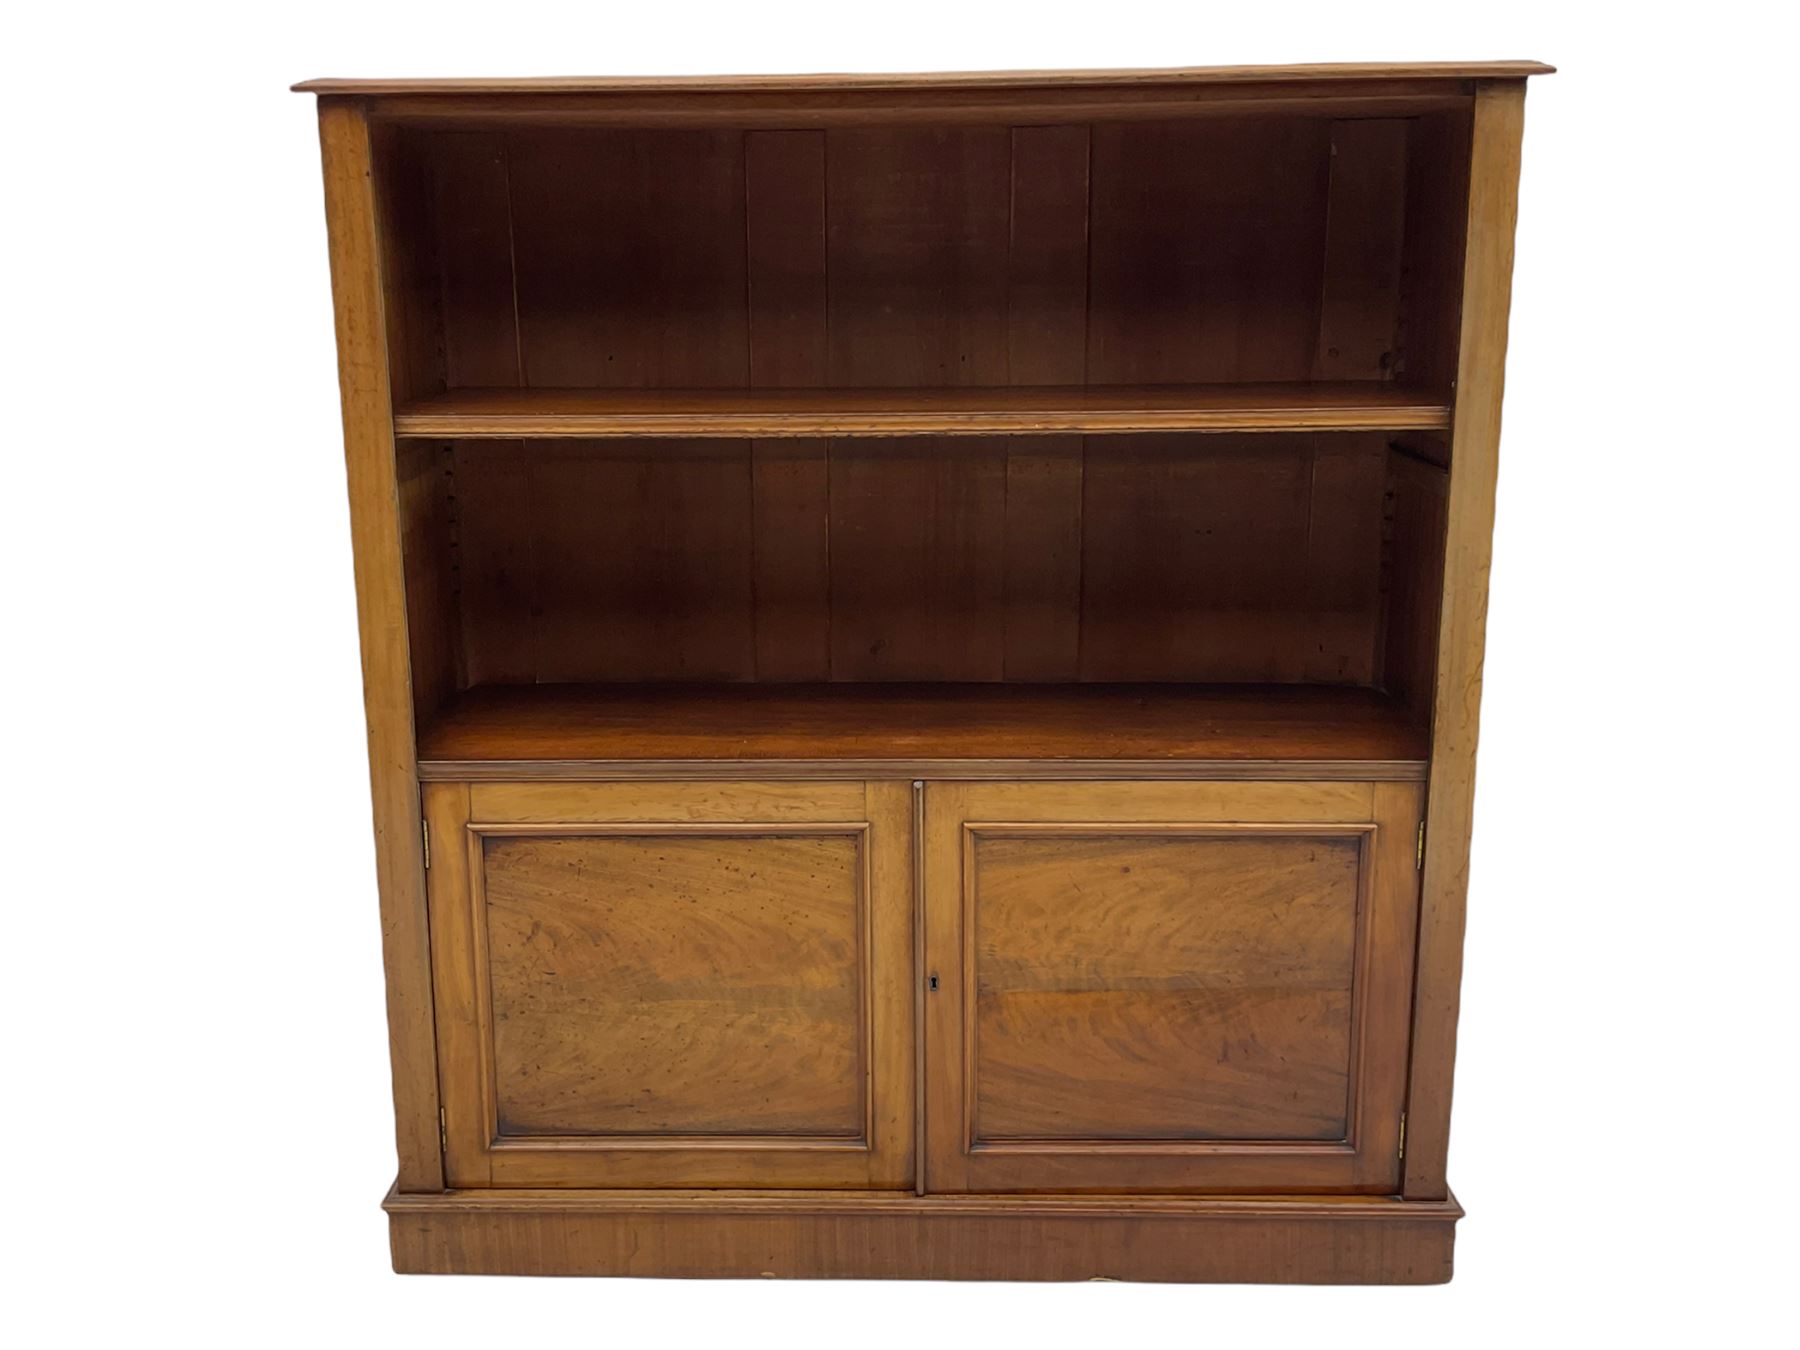 19th century mahogany open bookcase